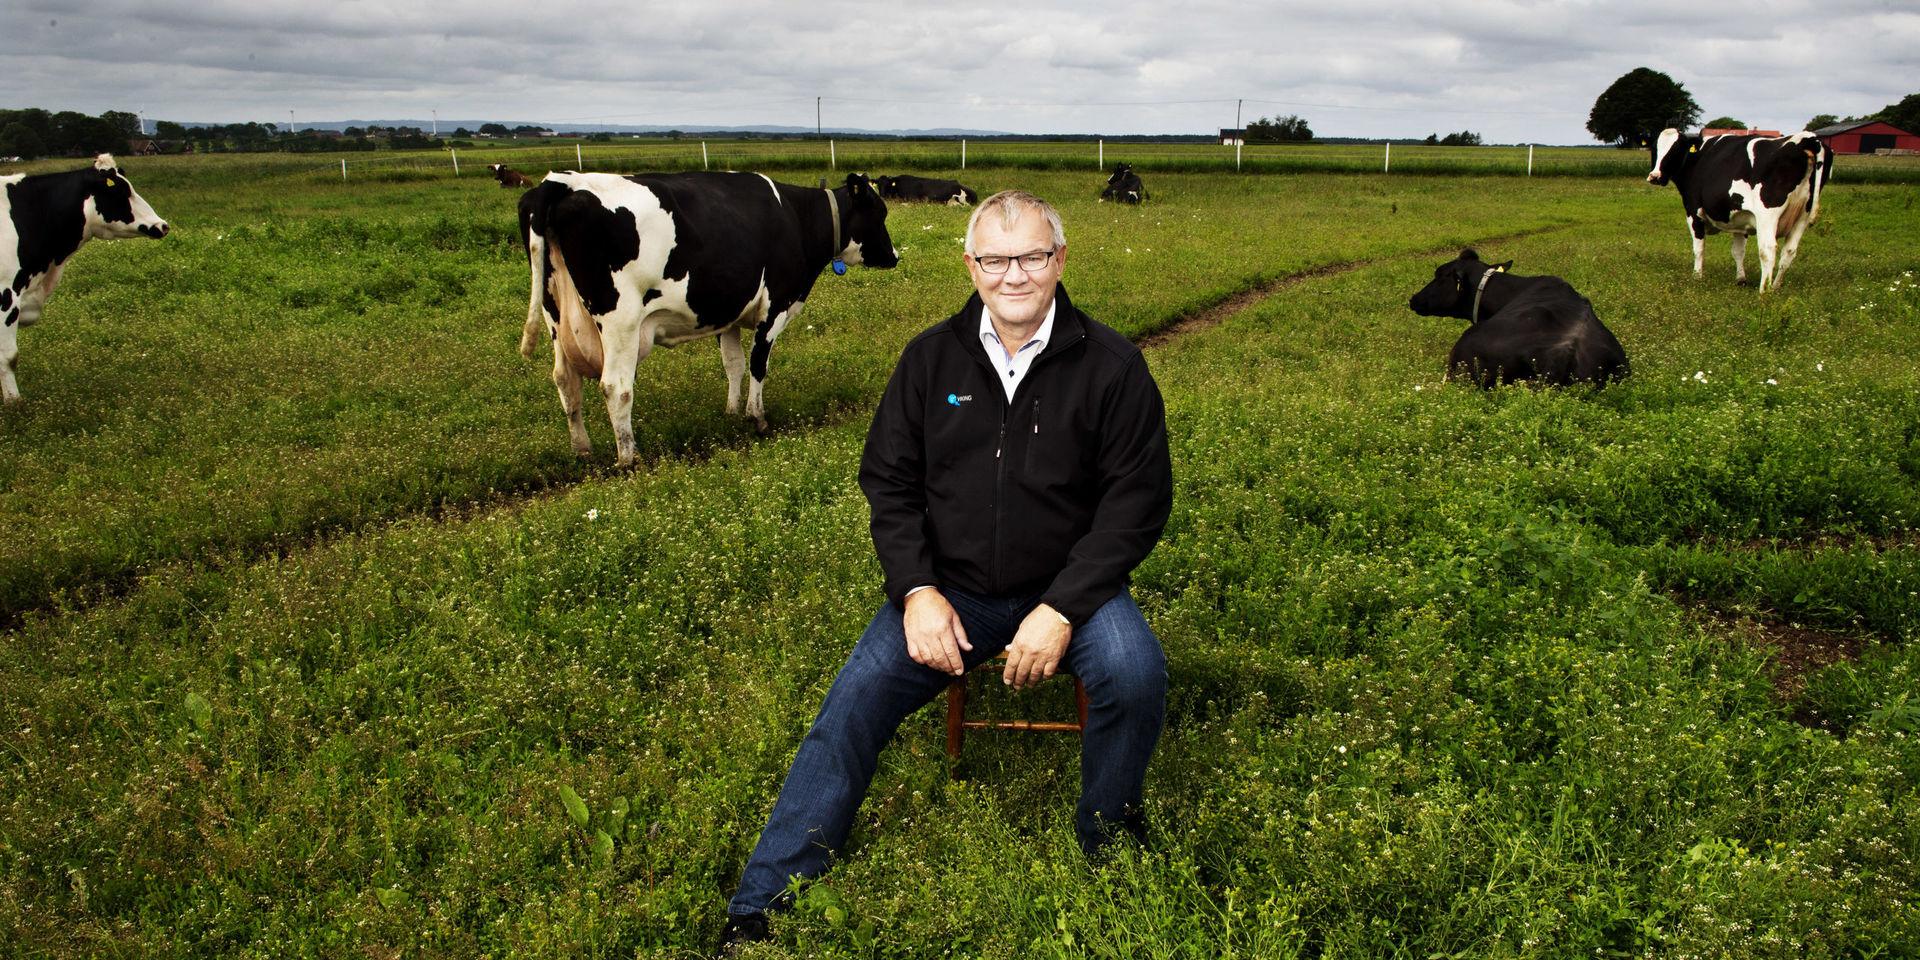 Åke Hantoft hoppade av gymnasiet för att han ville mjölka kor. Han fick mer än vad han kunde drömma om. Han blev mjölkbonde och styrelseordförande för storkoncernen Arla. Bilden togs 2012.